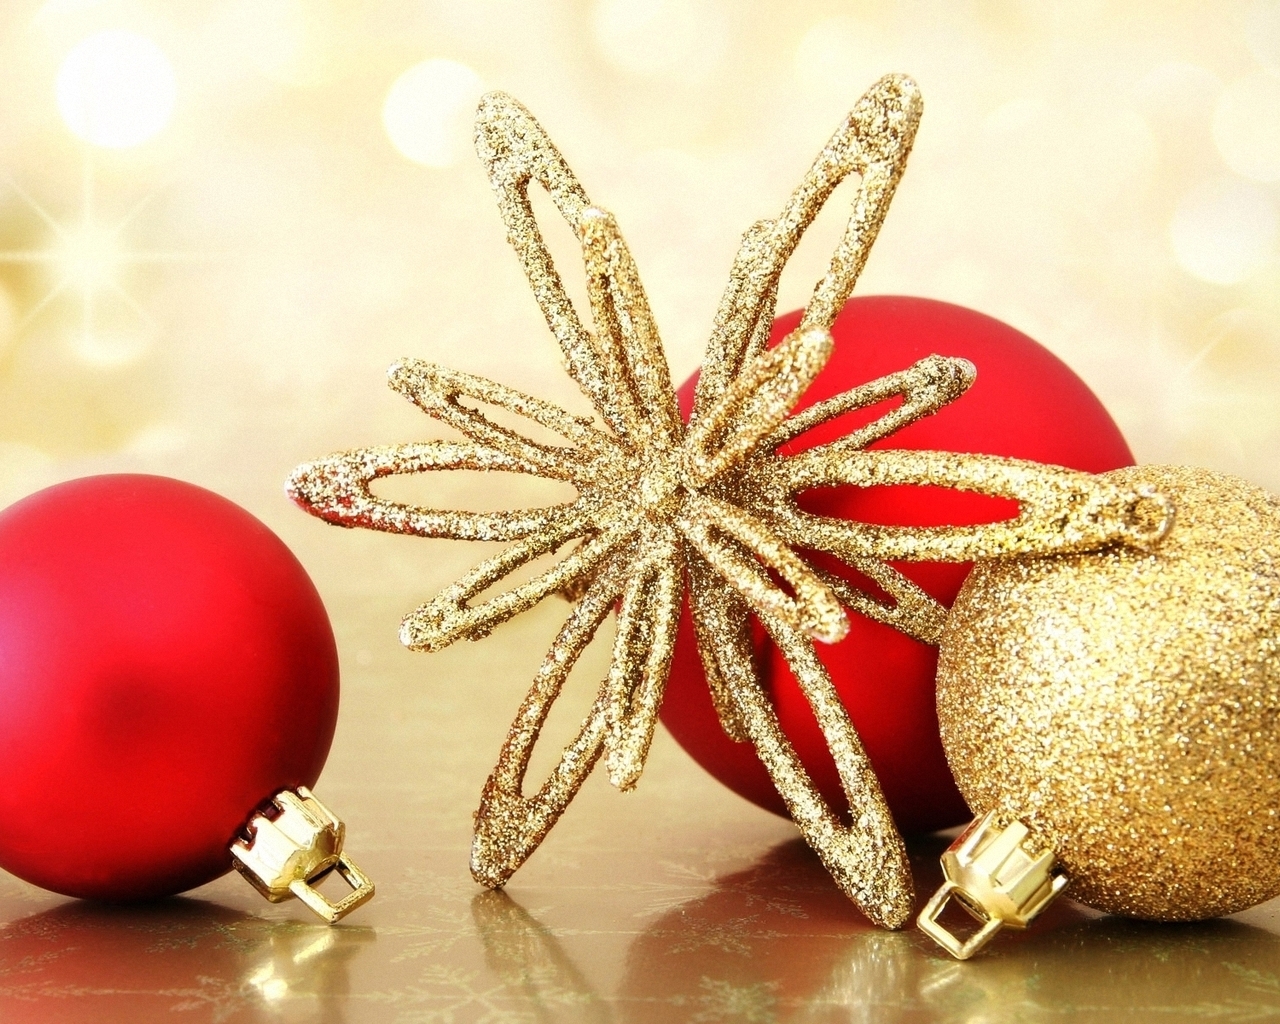 Картинка: Снежинка, шары, золотой, красный, праздник, новый год